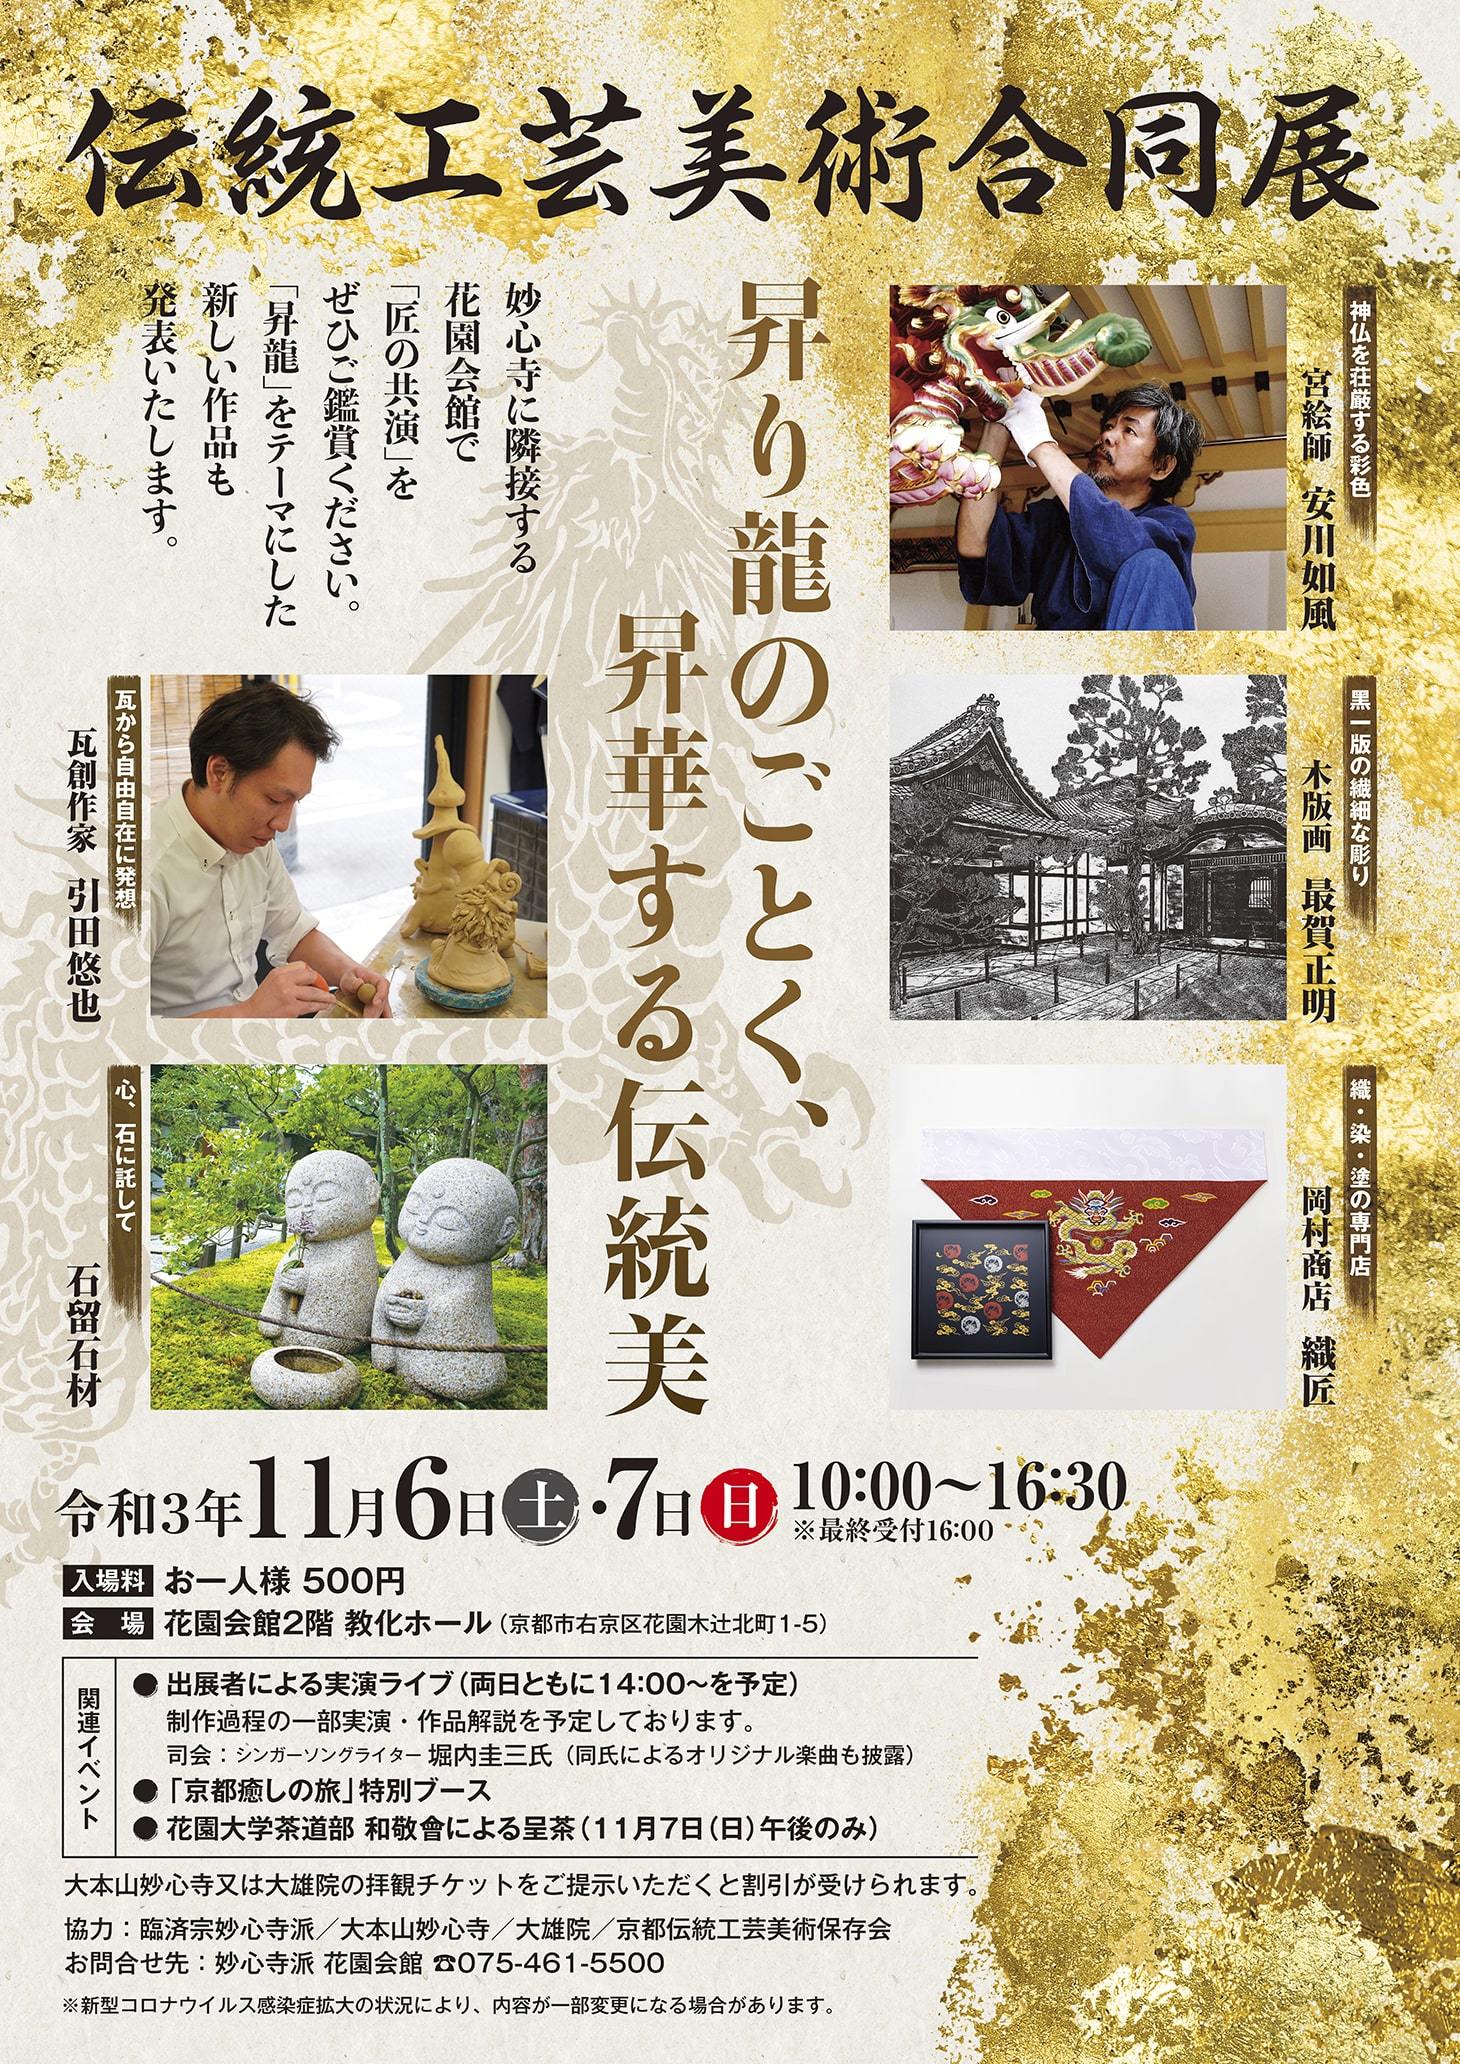 コロナ禍で新たな取り組み 職人5組が京都 花園会館に集結 伝統工芸美術合同展 が11月6日 7日開催 21年10月12日 エキサイトニュース